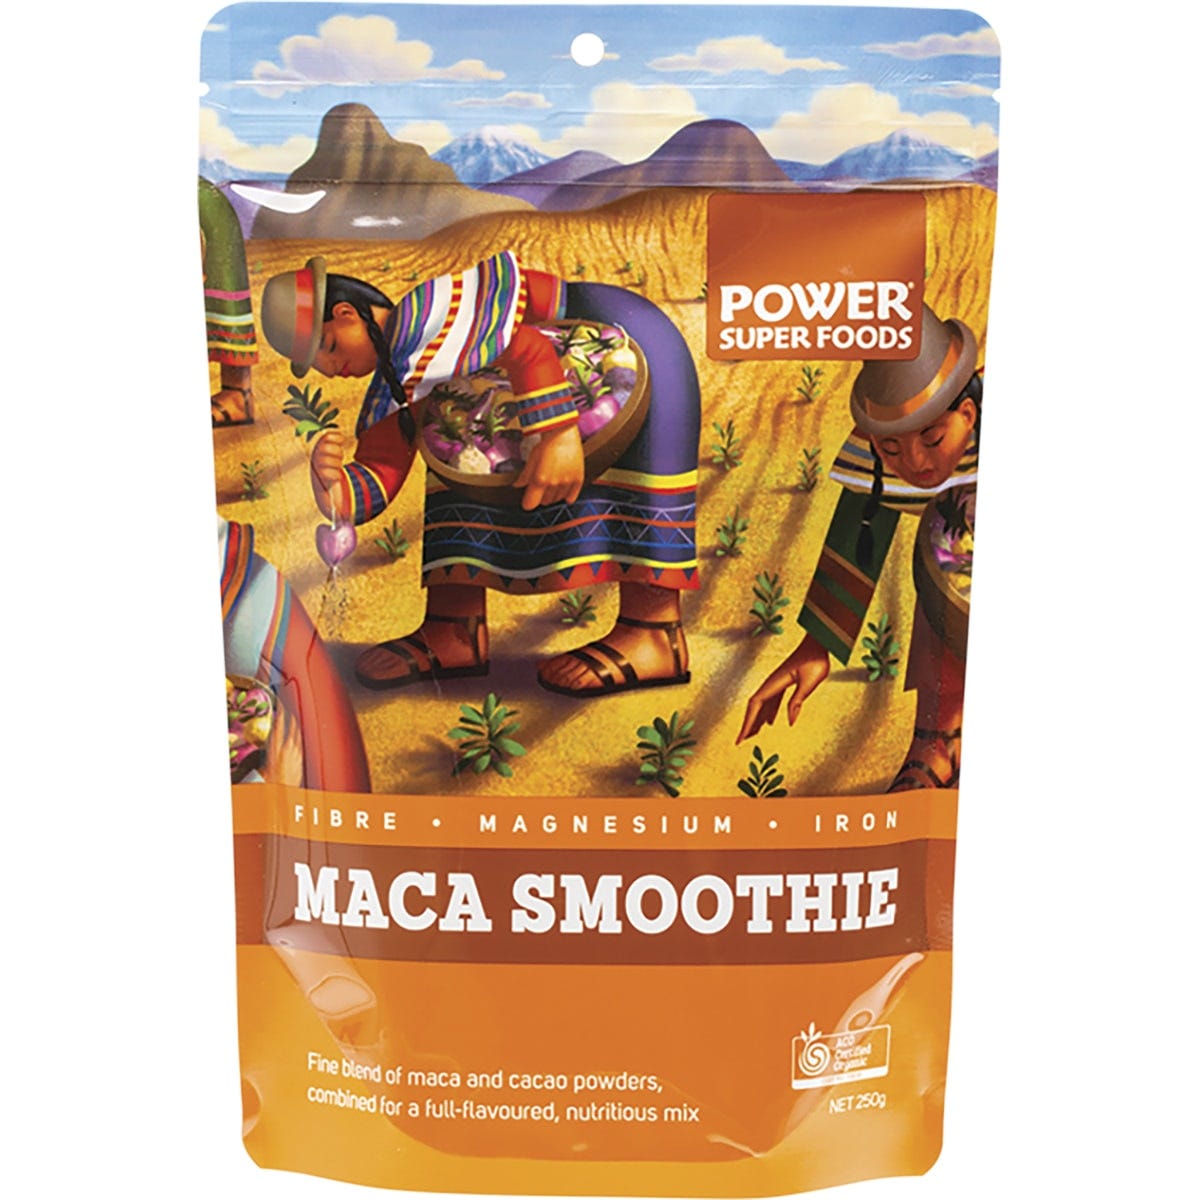 Maca Smoothie The Origin Series Maca & Cacao